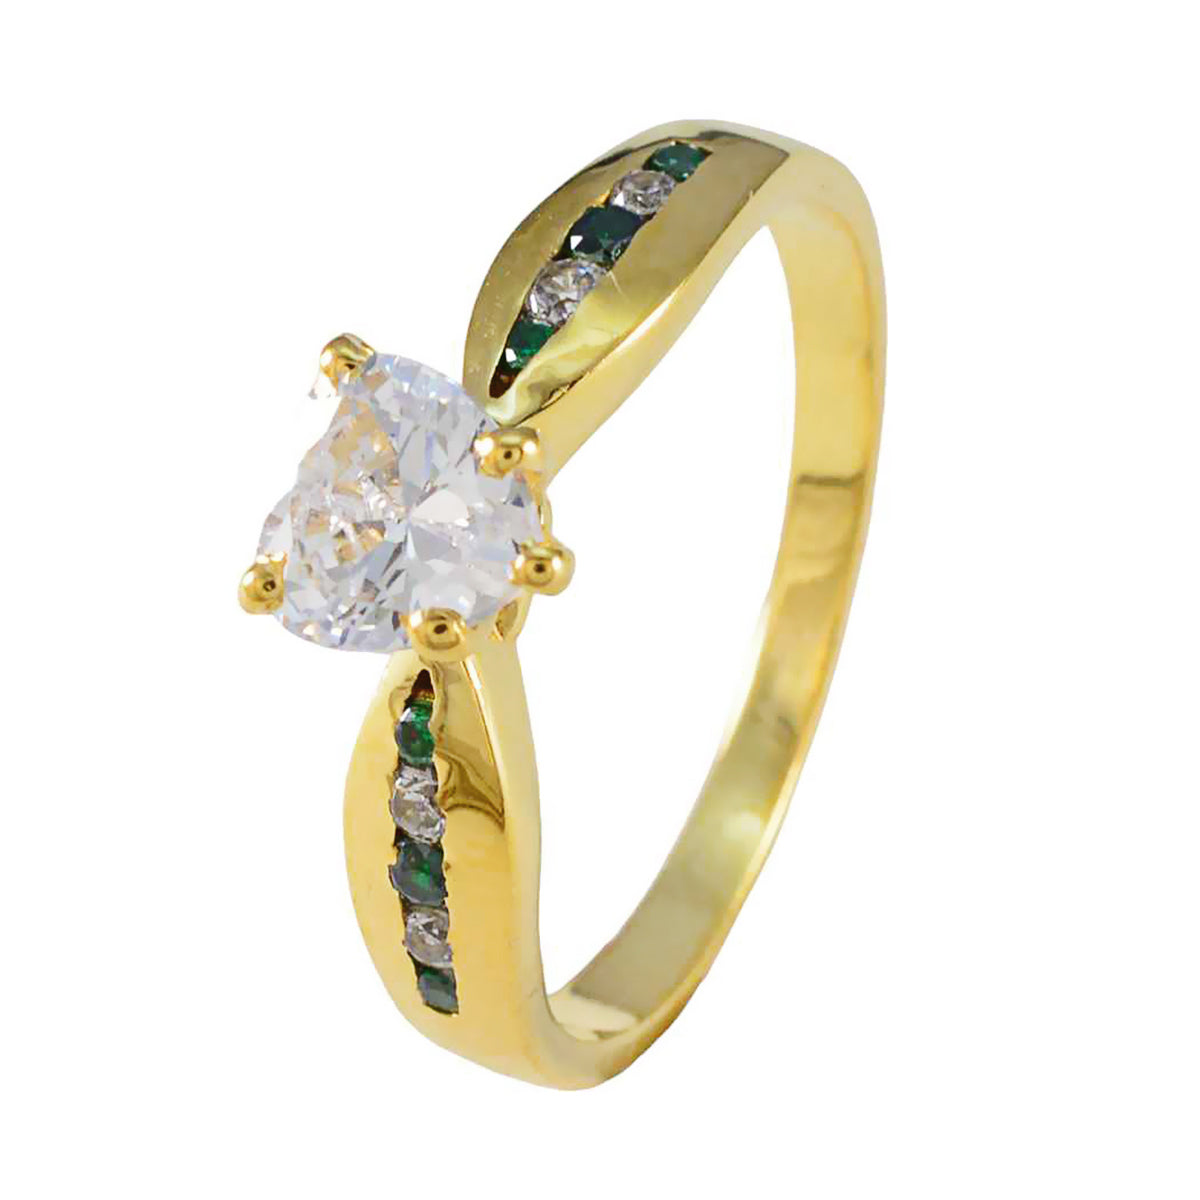 Riyo Klassischer Silberring mit gelber Vergoldung, Smaragd-CZ-Stein, herzförmige Krappenfassung, Schmuck, Verlobungsring